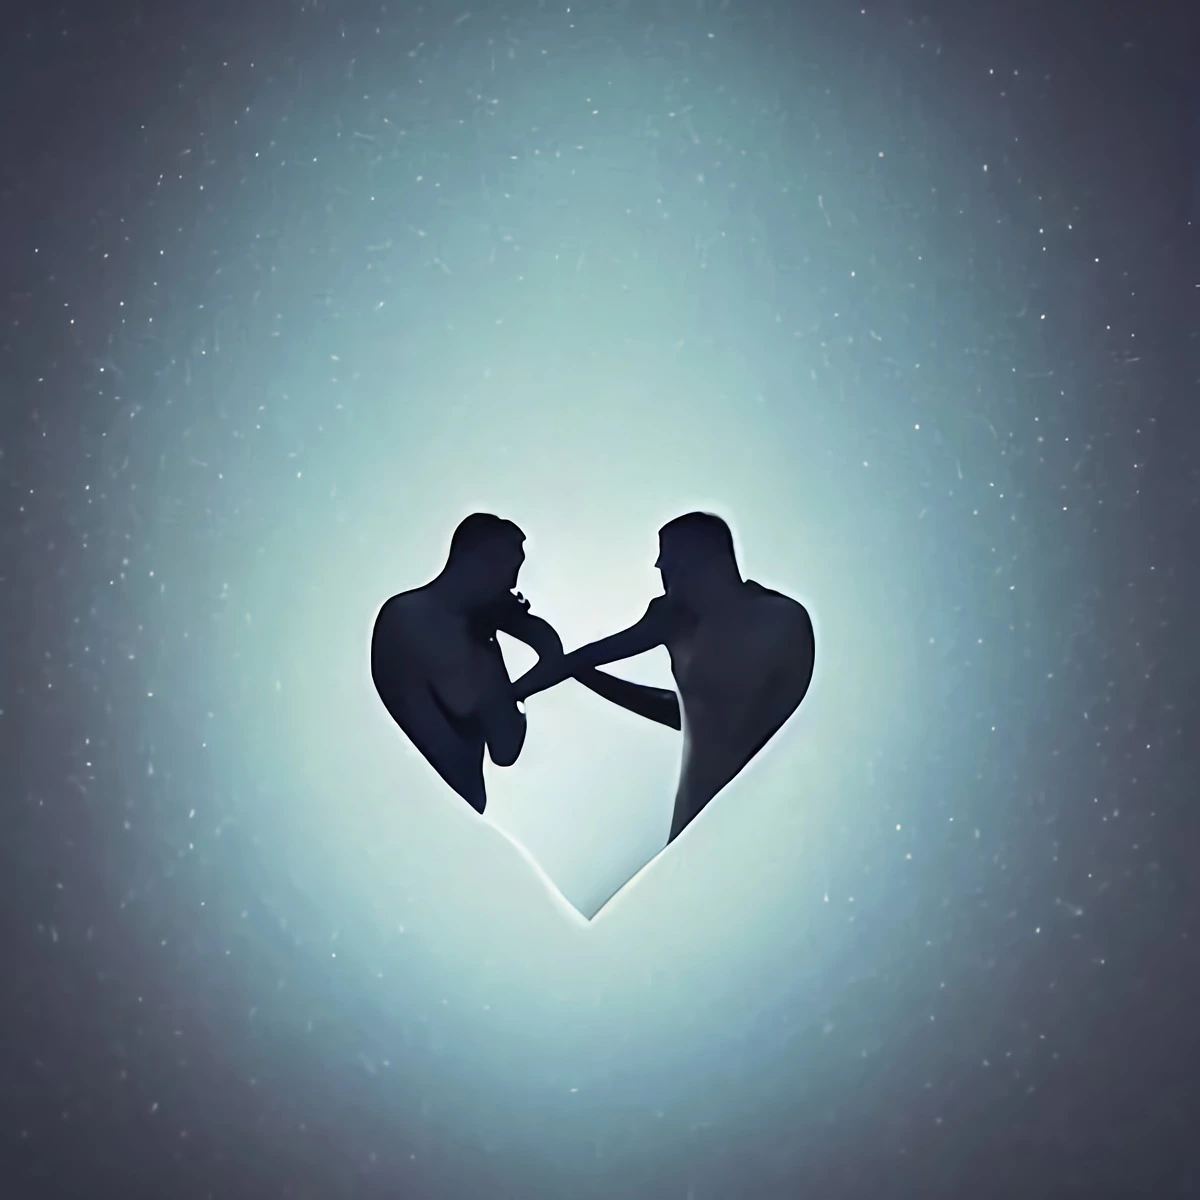 dessin en forme de cœur forme par deux personnes en face a face sur fond gris comme un ciel etoile tres claire